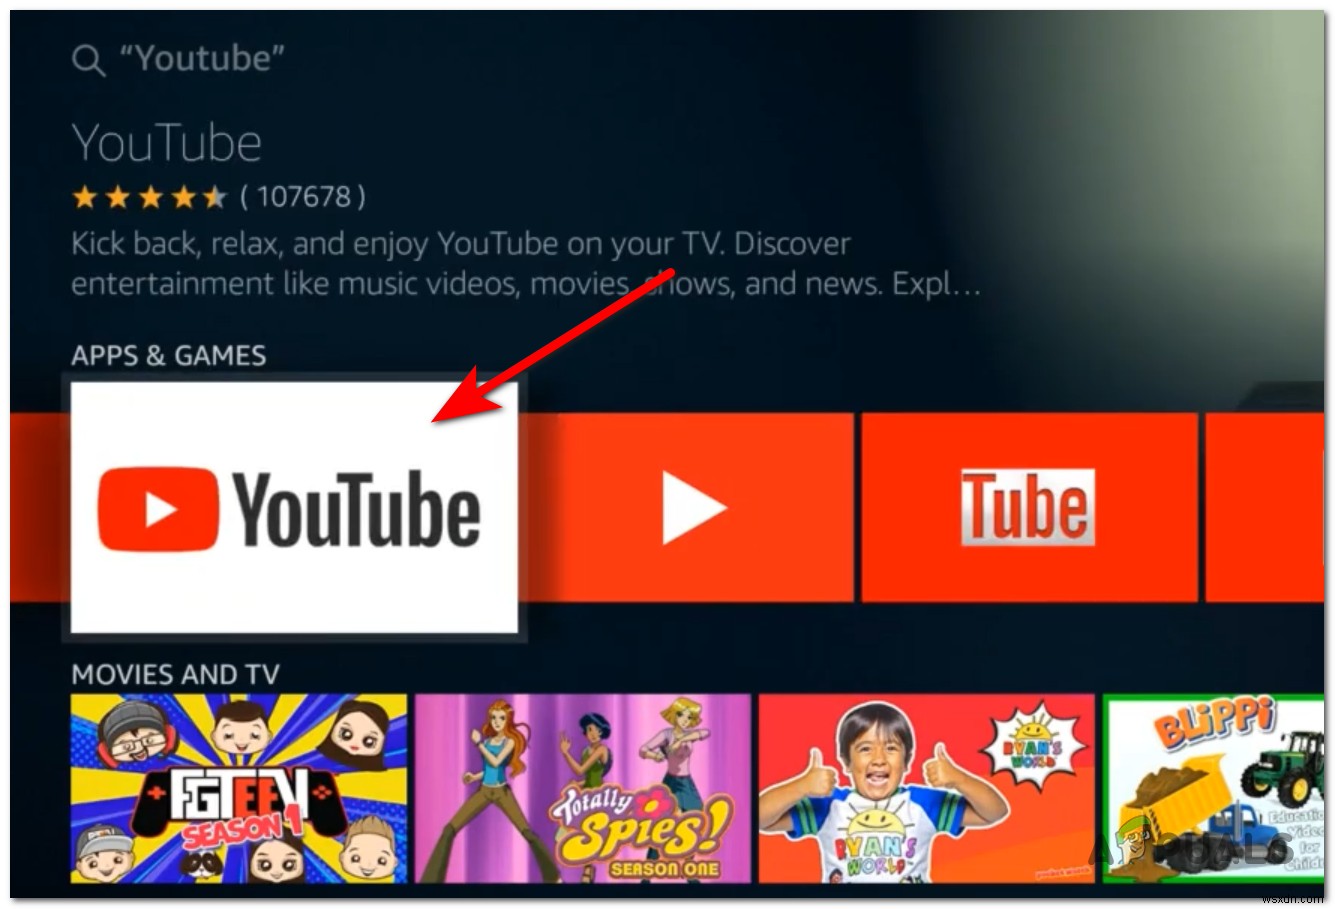 วิธีเปิดใช้งาน YouTube โดยใช้ Youtube.com/activate 